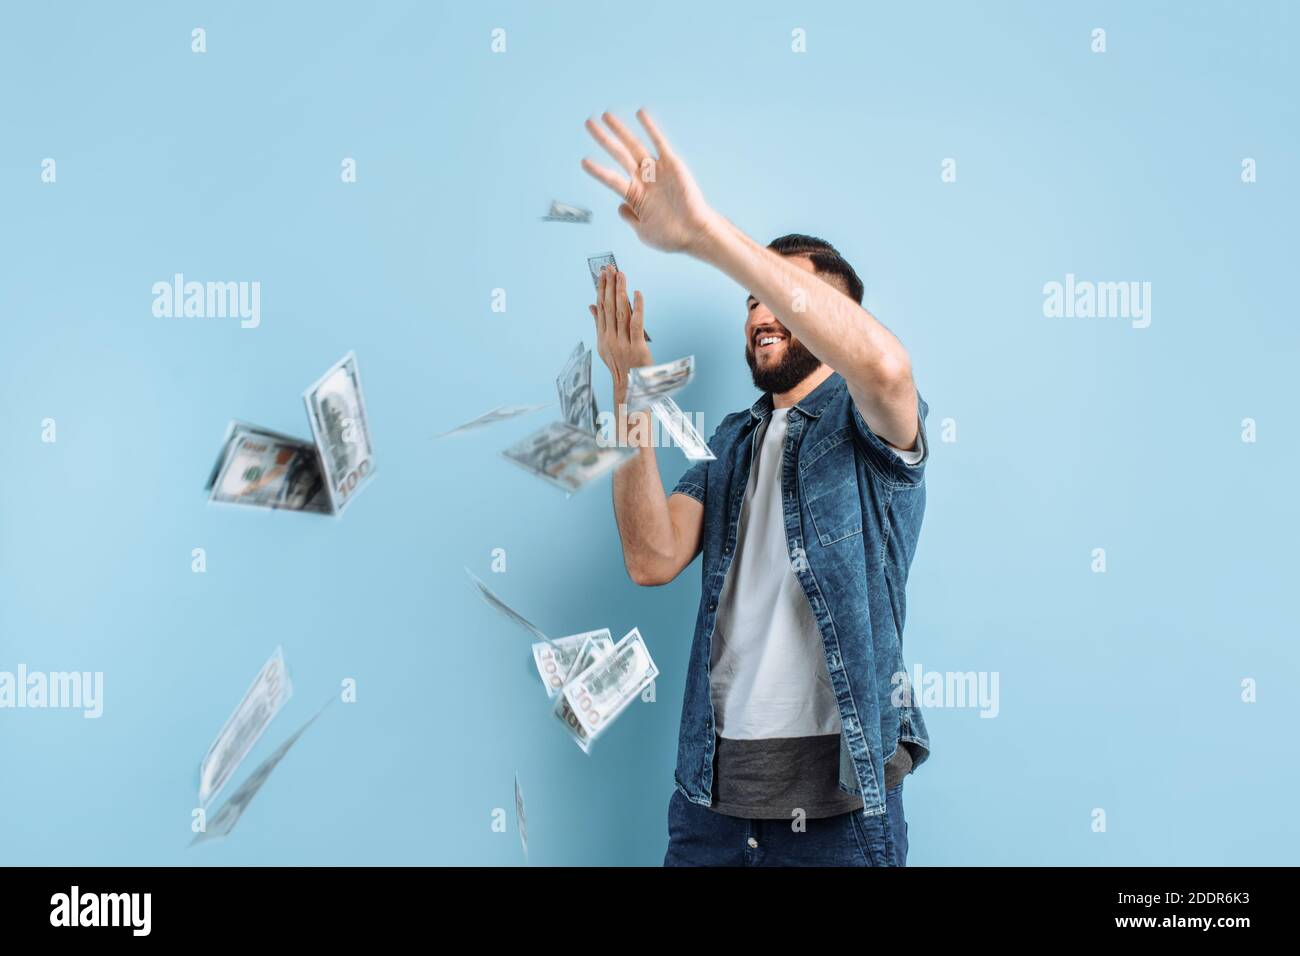 Ritratto di un felice giovane uomo bearded che gettava le banconote isolato su sfondo blu Foto Stock